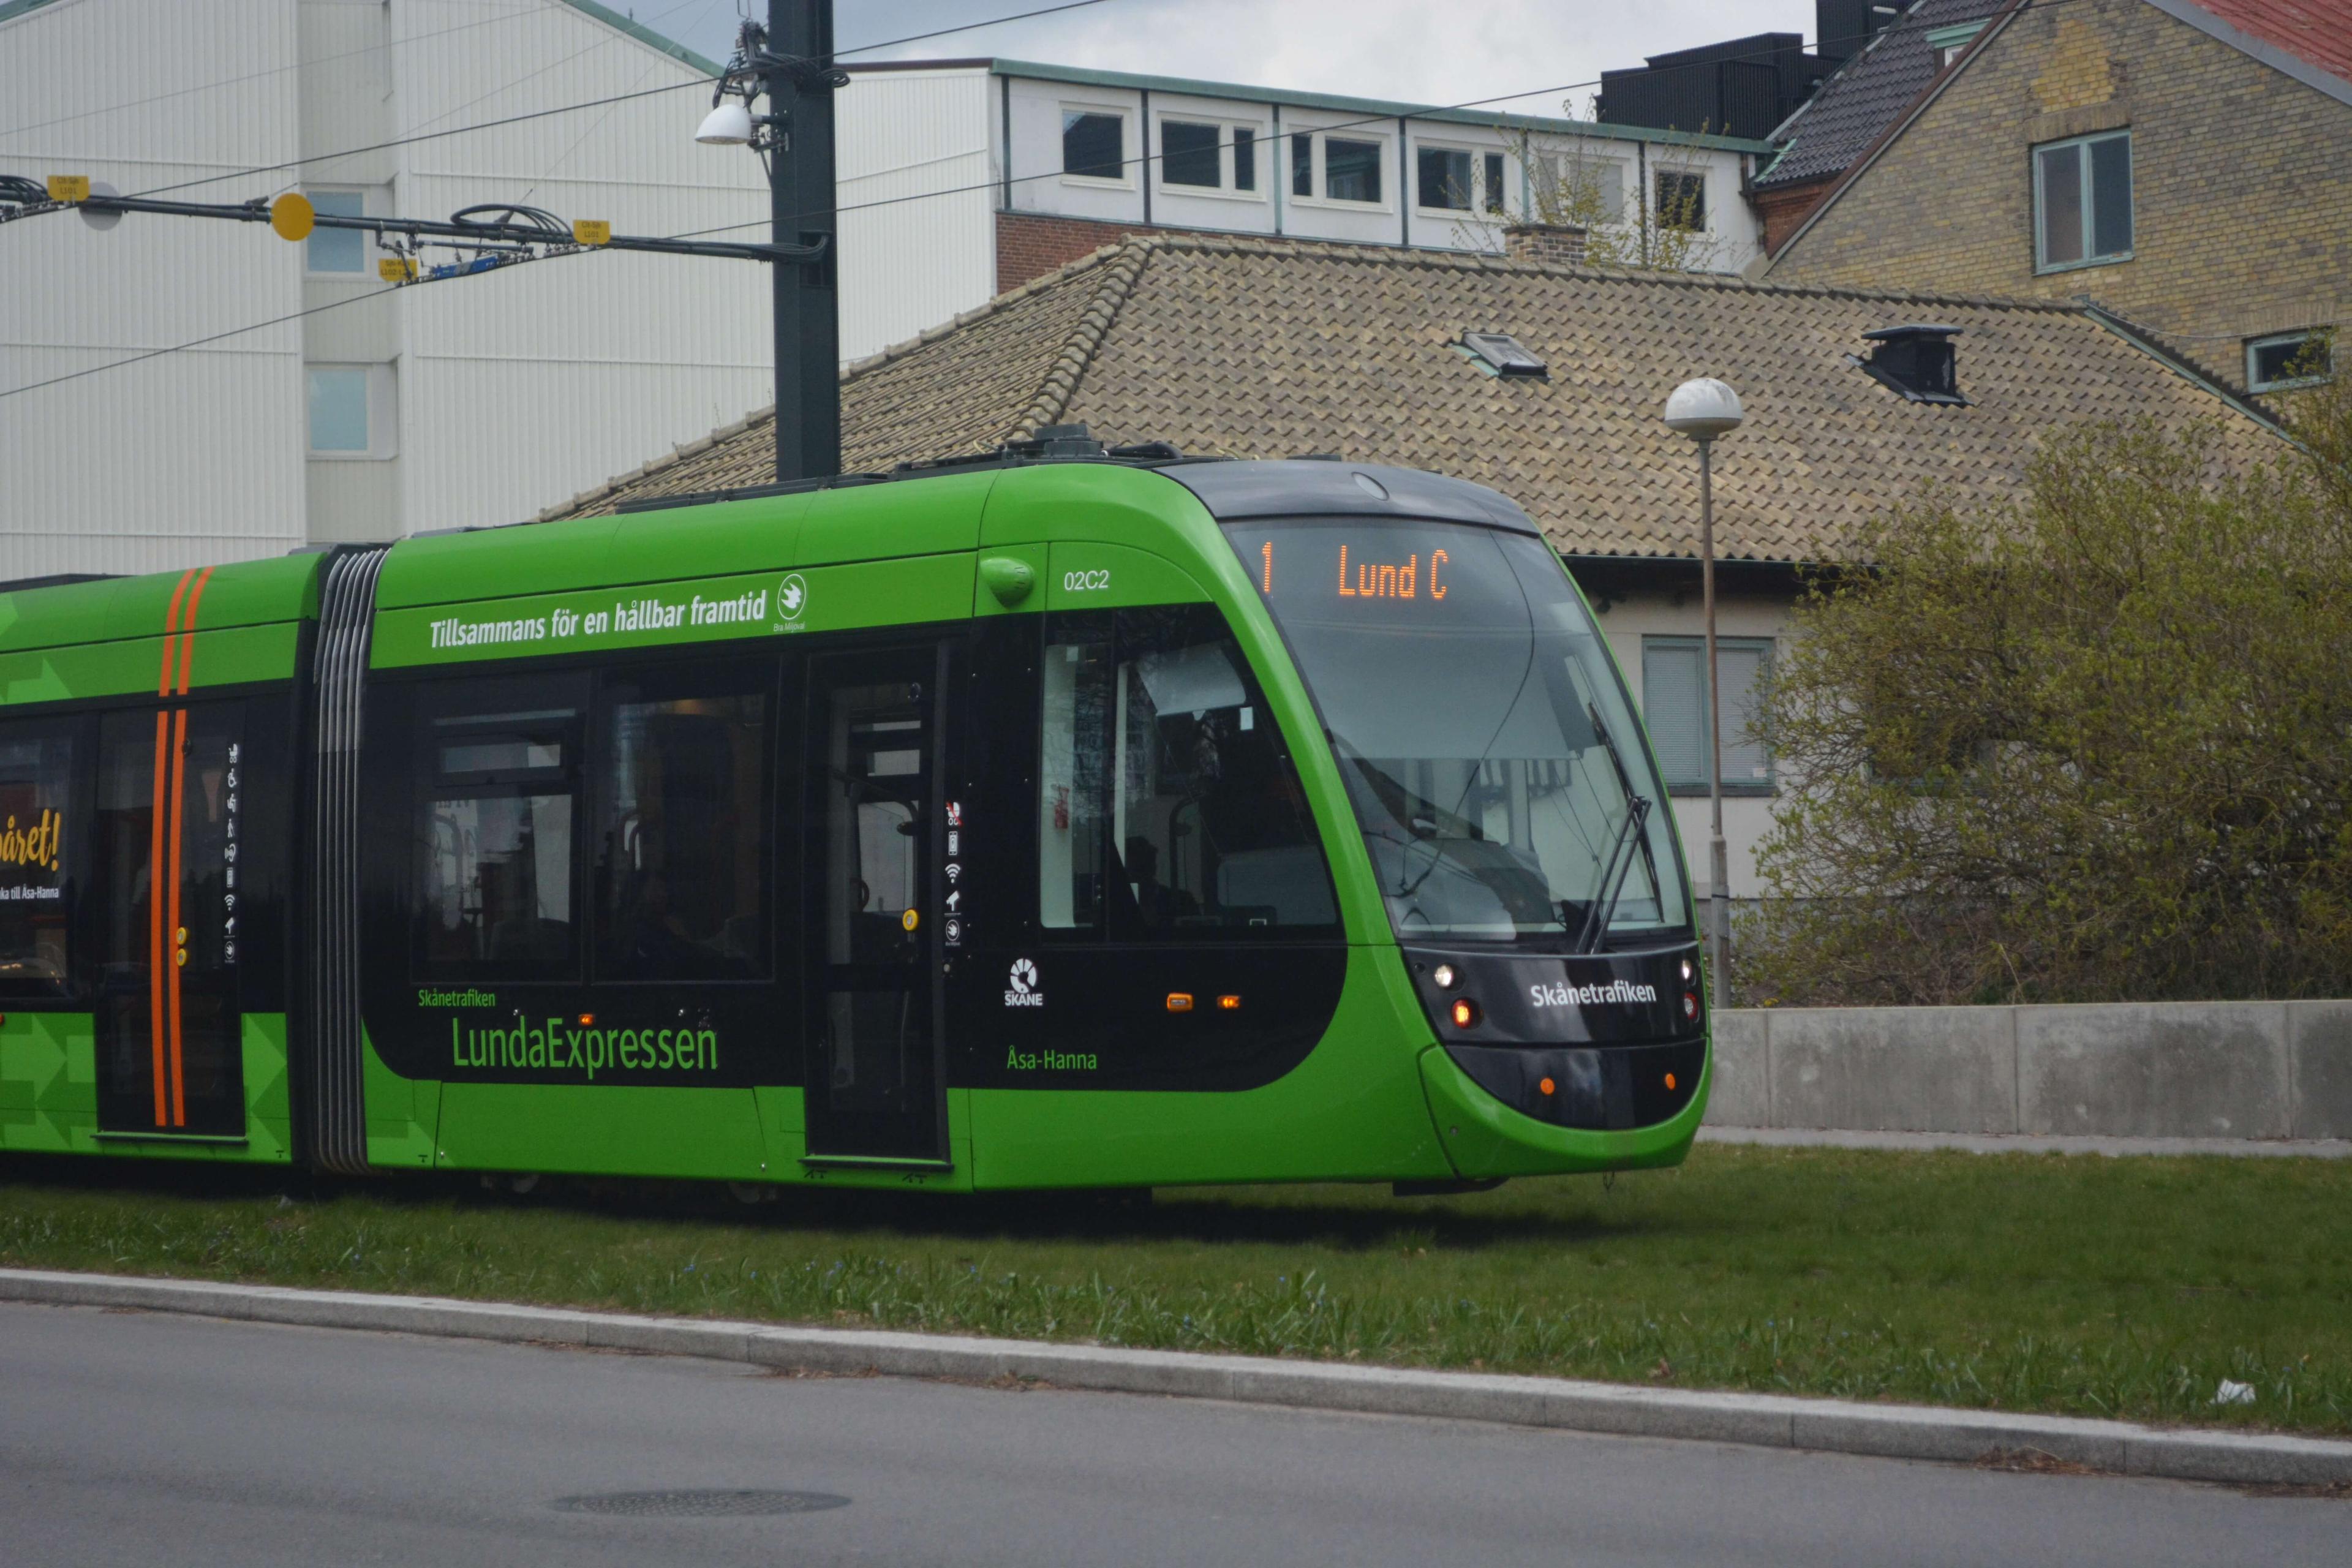 Passagererne venter i op til 20 minutter på at blive transporteret 5,5 km med 21 km/t. Men LundaExpressen er god for øjnene og signalerer grøn handlekraft, konstaterer Uffe Palludan.

